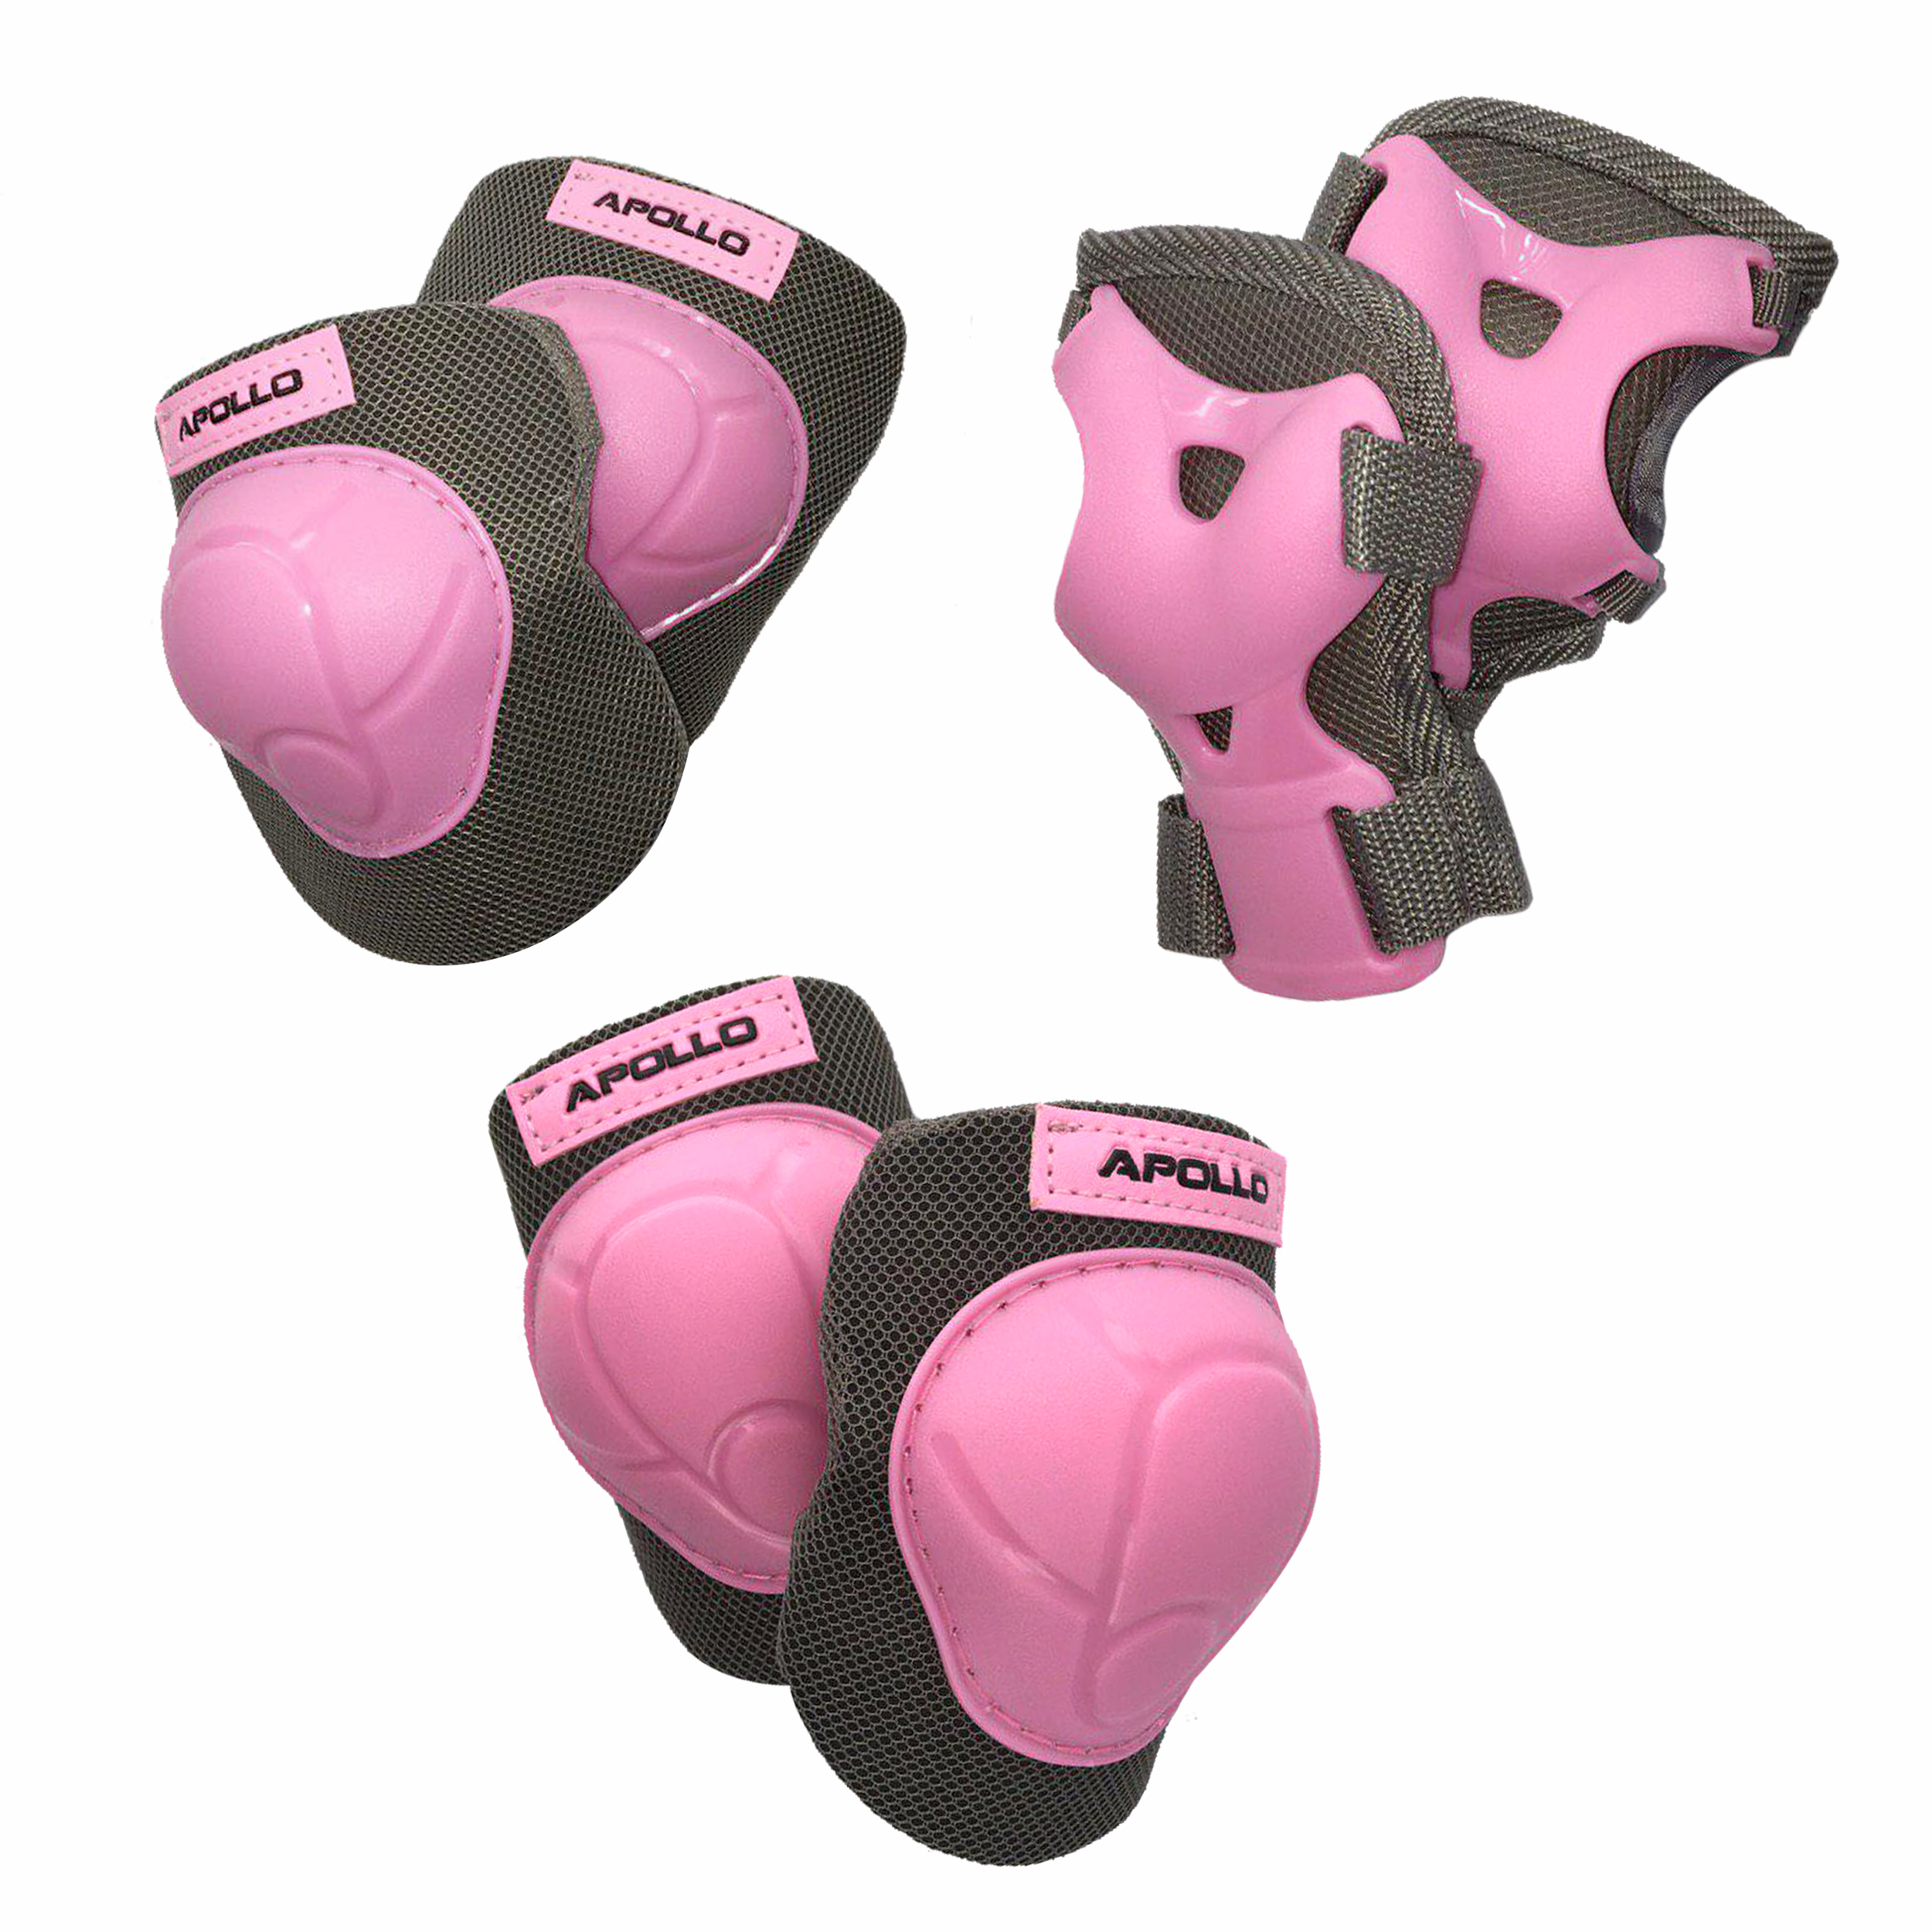 Apollo Knie- Ellenbogen und Handgelenkschoner Set Gr. S, Farbe: pink